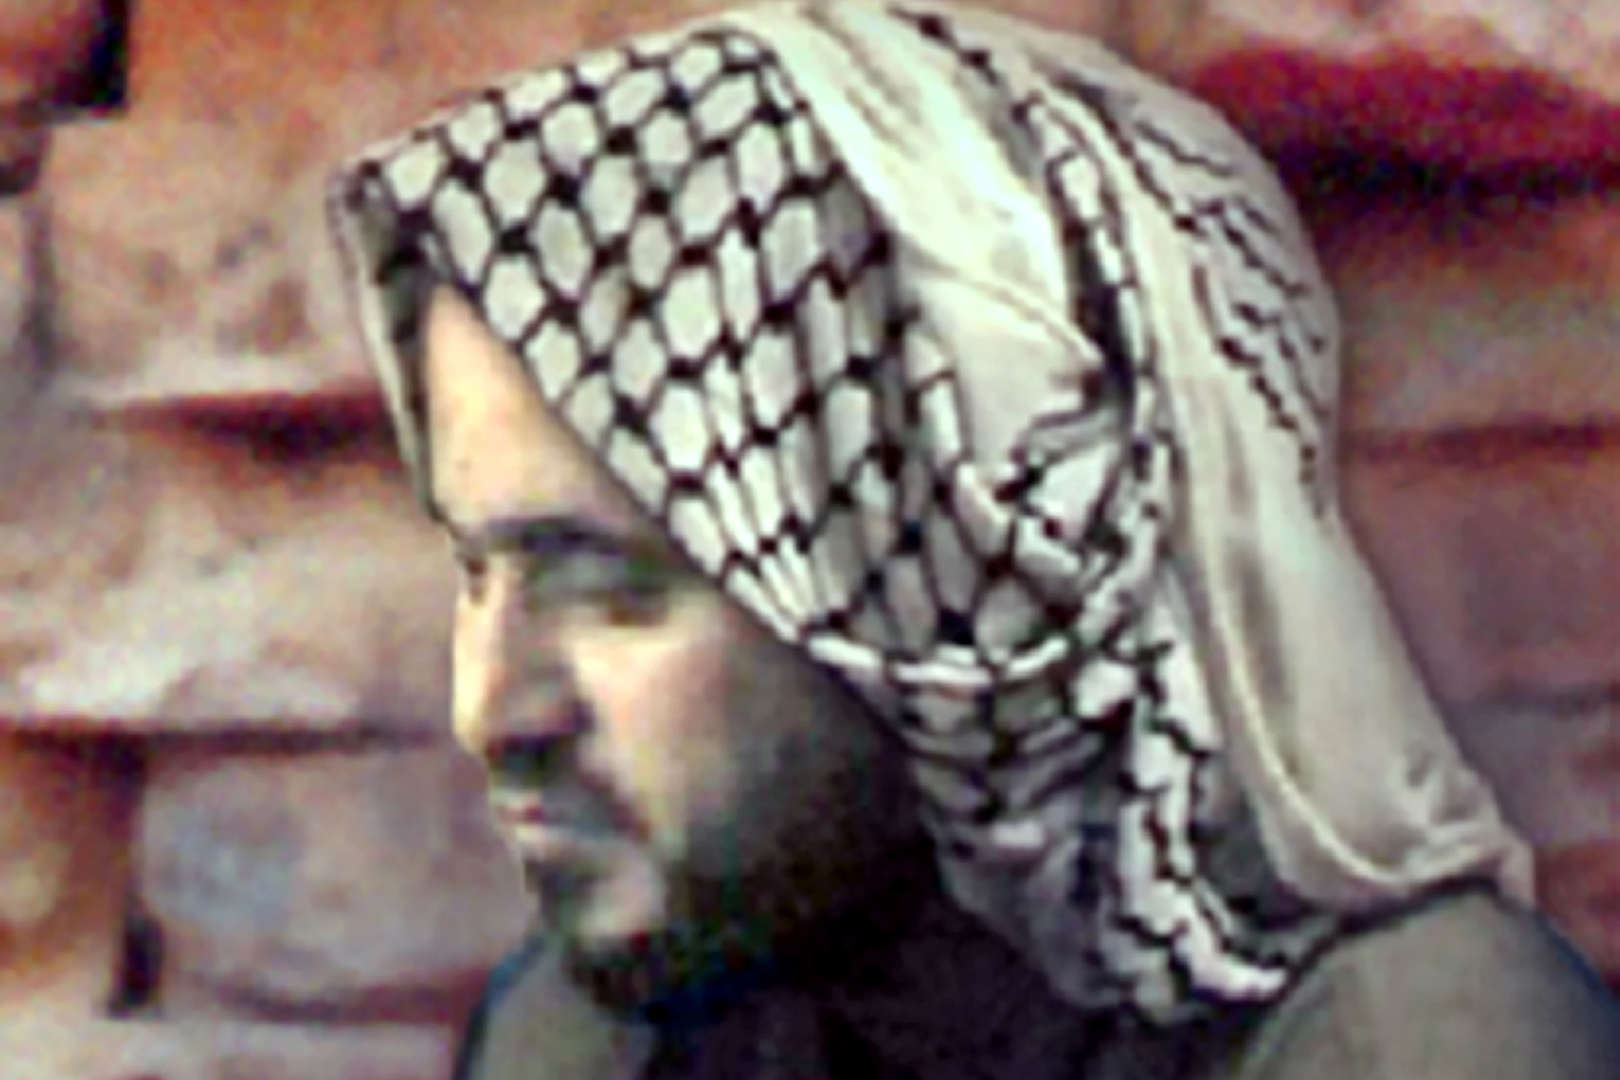 Diapositiva 15 di 25: La morte di Abu Musab al-Zarqawi si inquadra nell'ambito della guerra in Iraq, paese responsabile, secondo l'amministrazione Bush, di essere una base per il terrorismo e di nascondere armi di distruzione di massa.